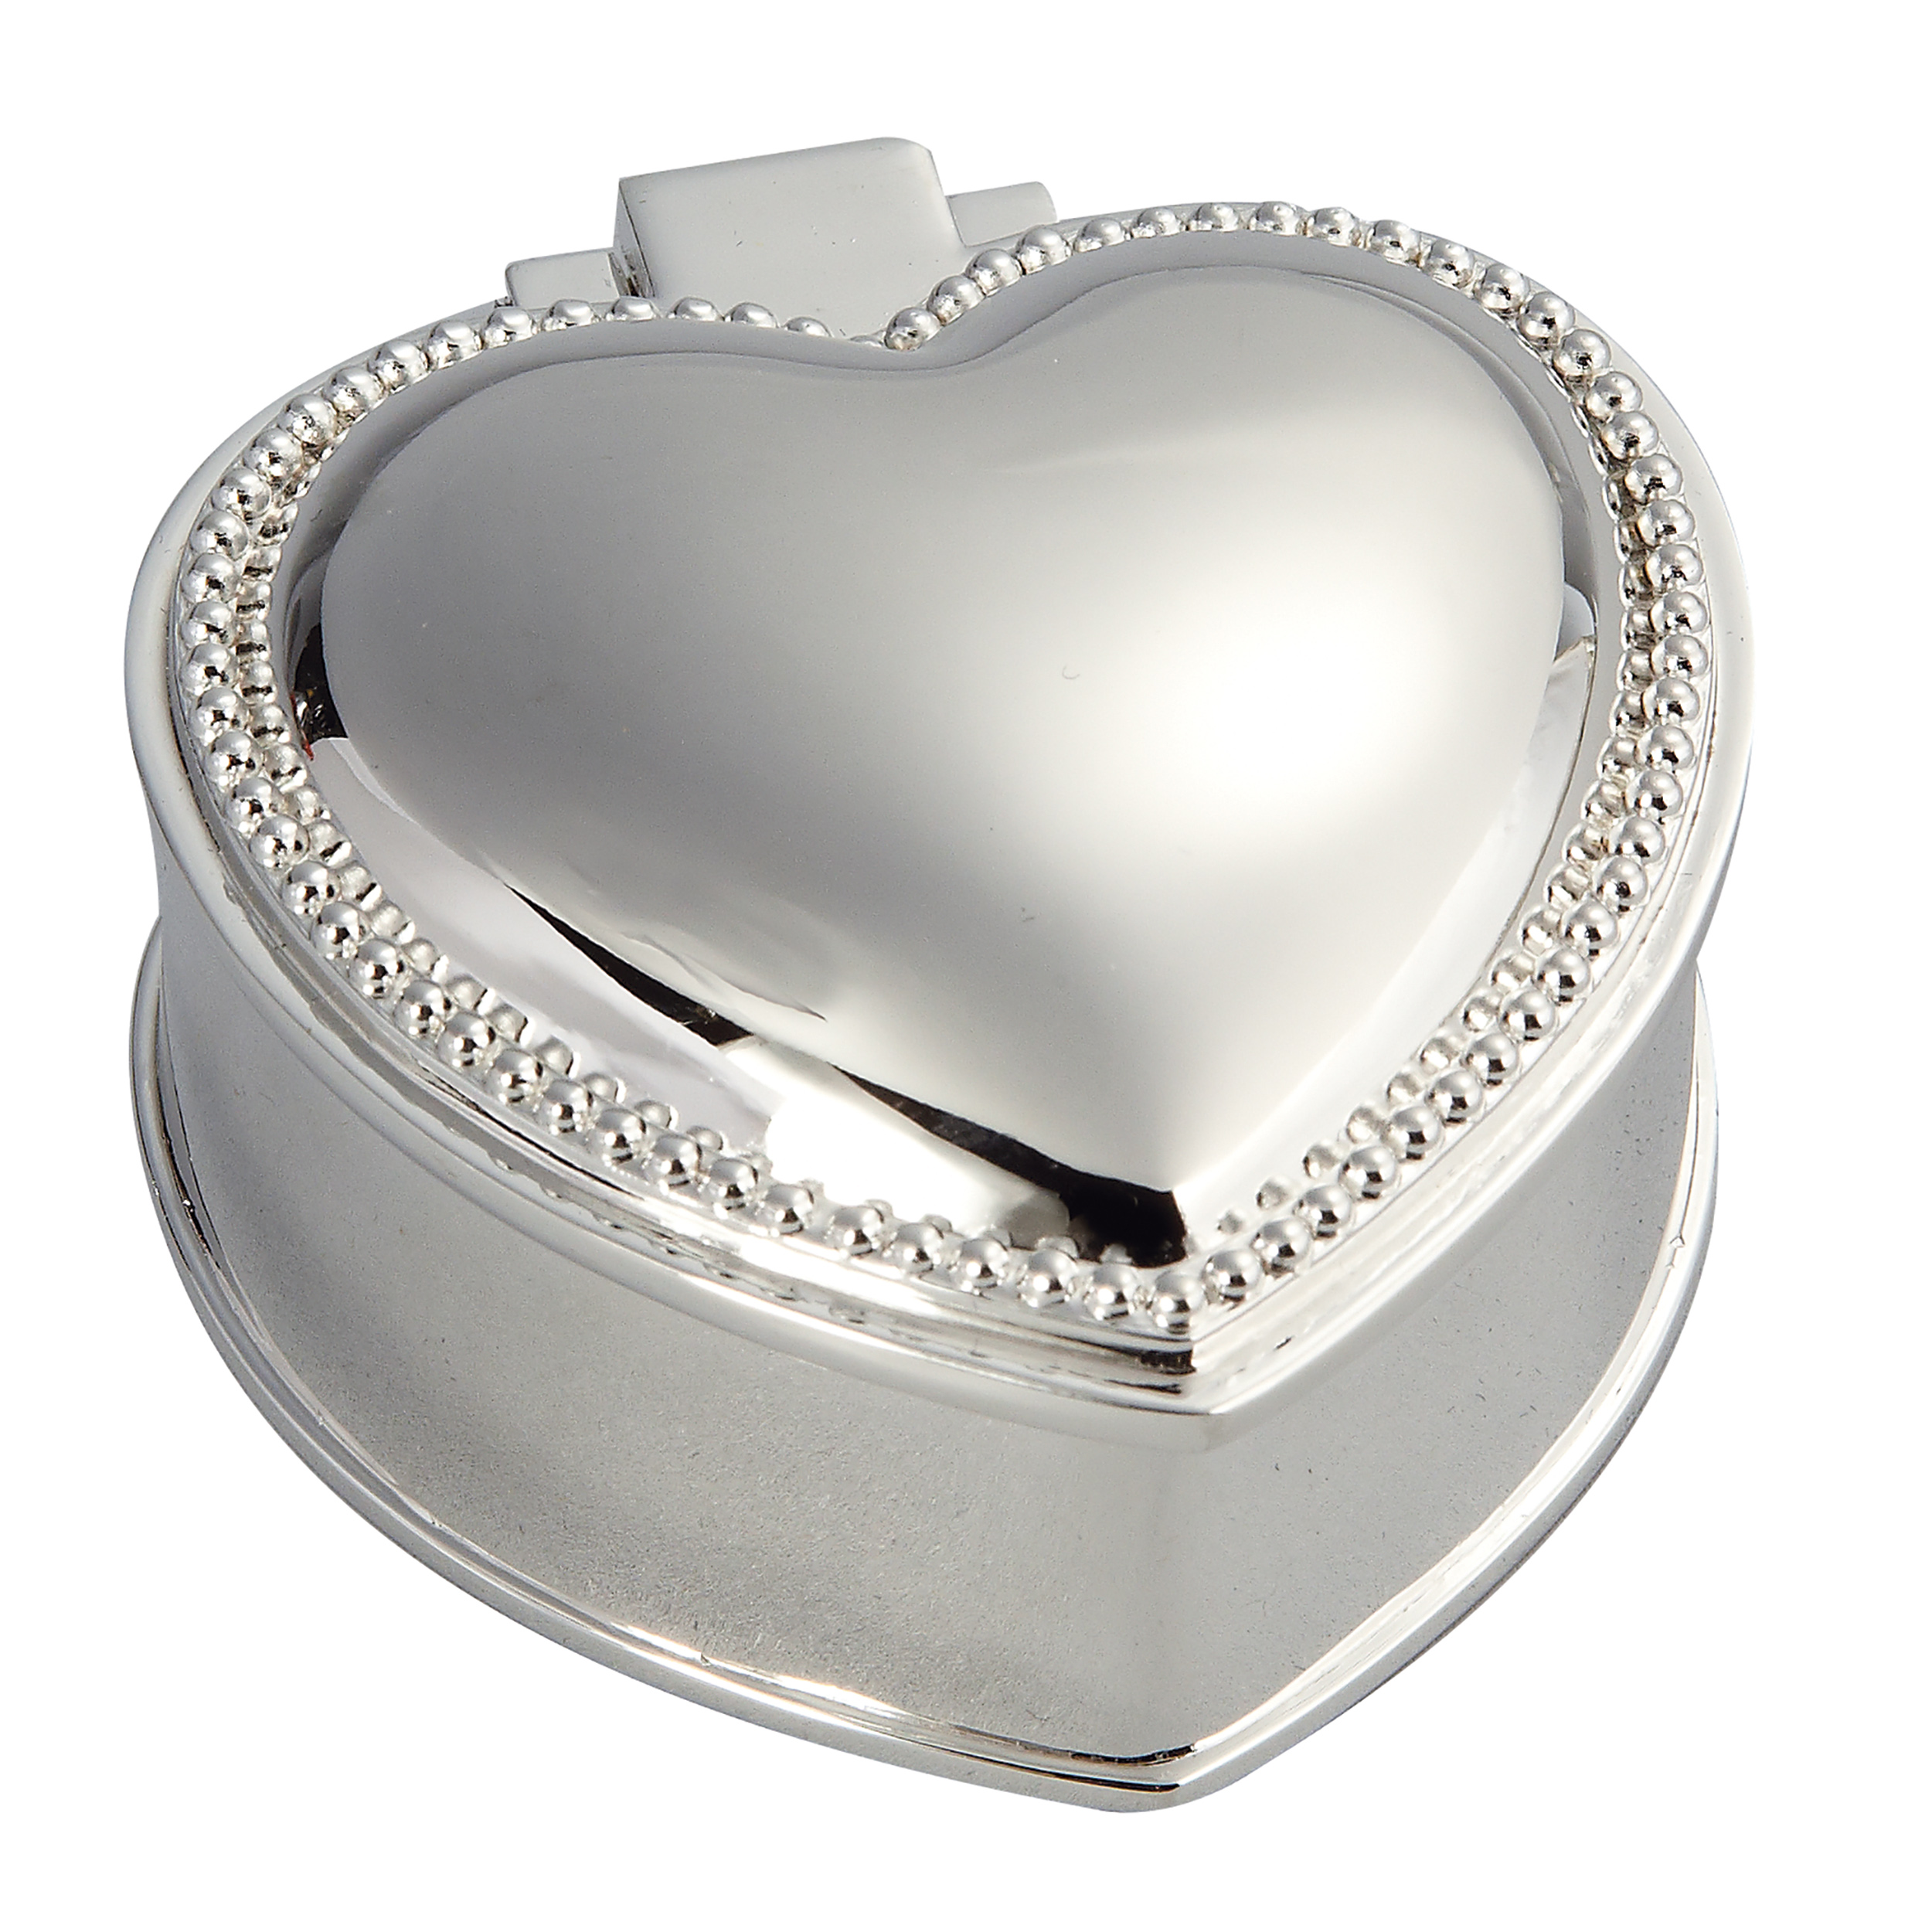 Heart box, 2.75" - Item # 6260